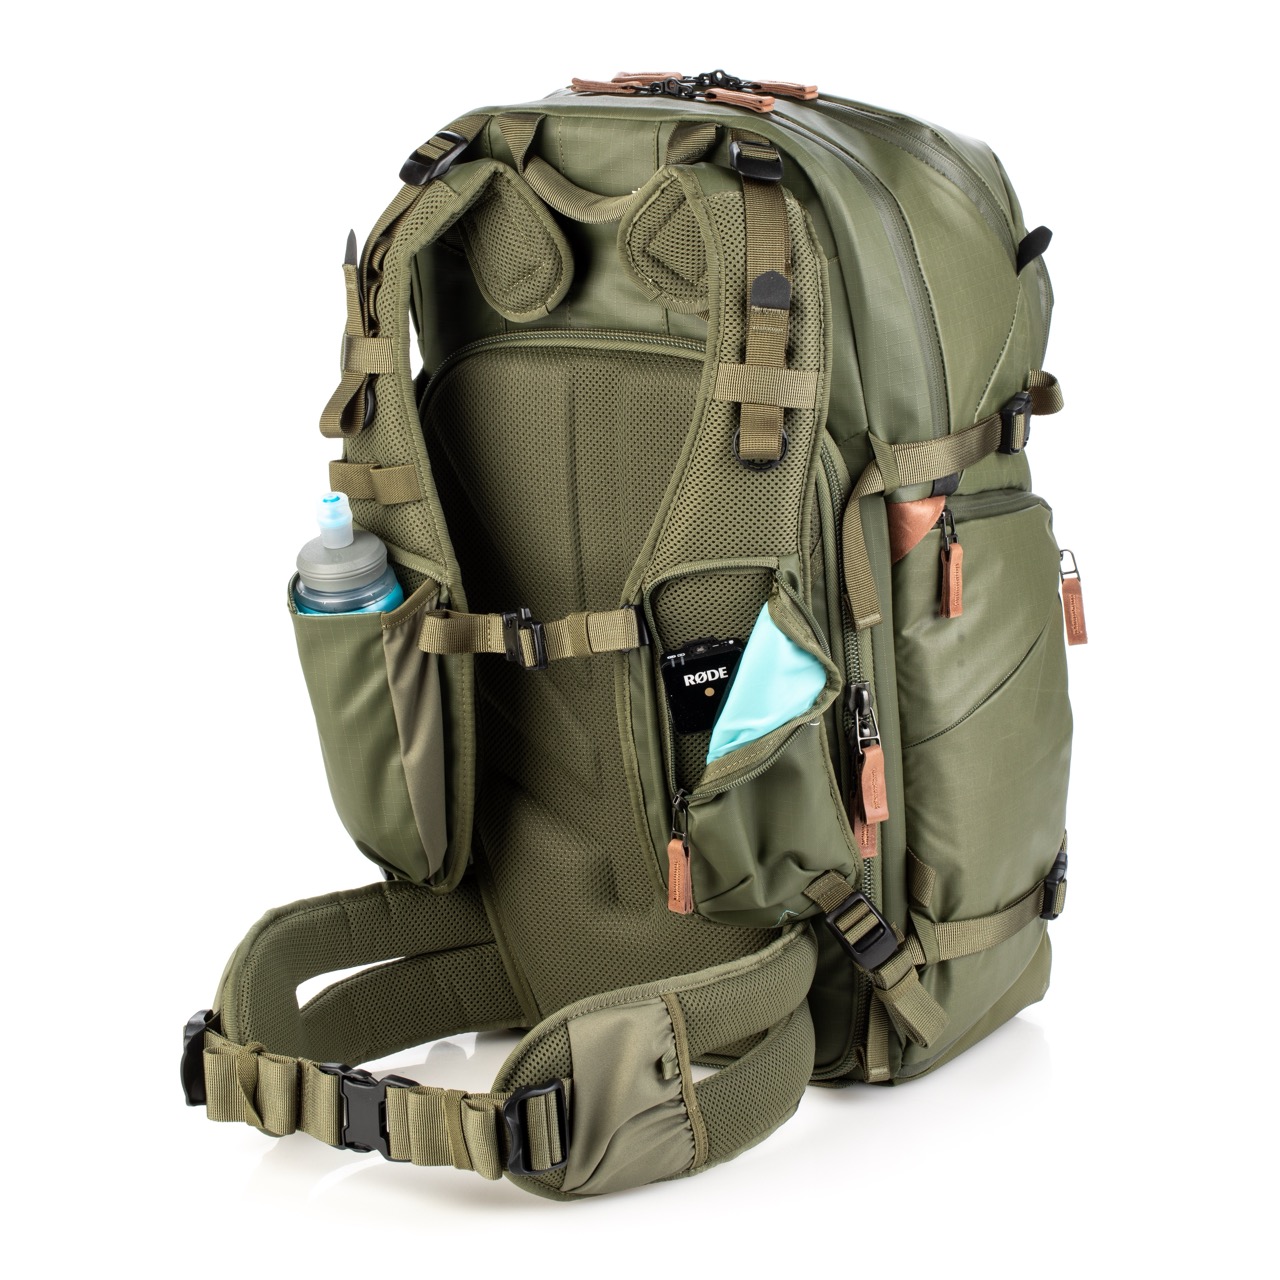 Shimoda Designs Explore v2 35 Rucksack in Armeegrün, von hinten und geschlossen